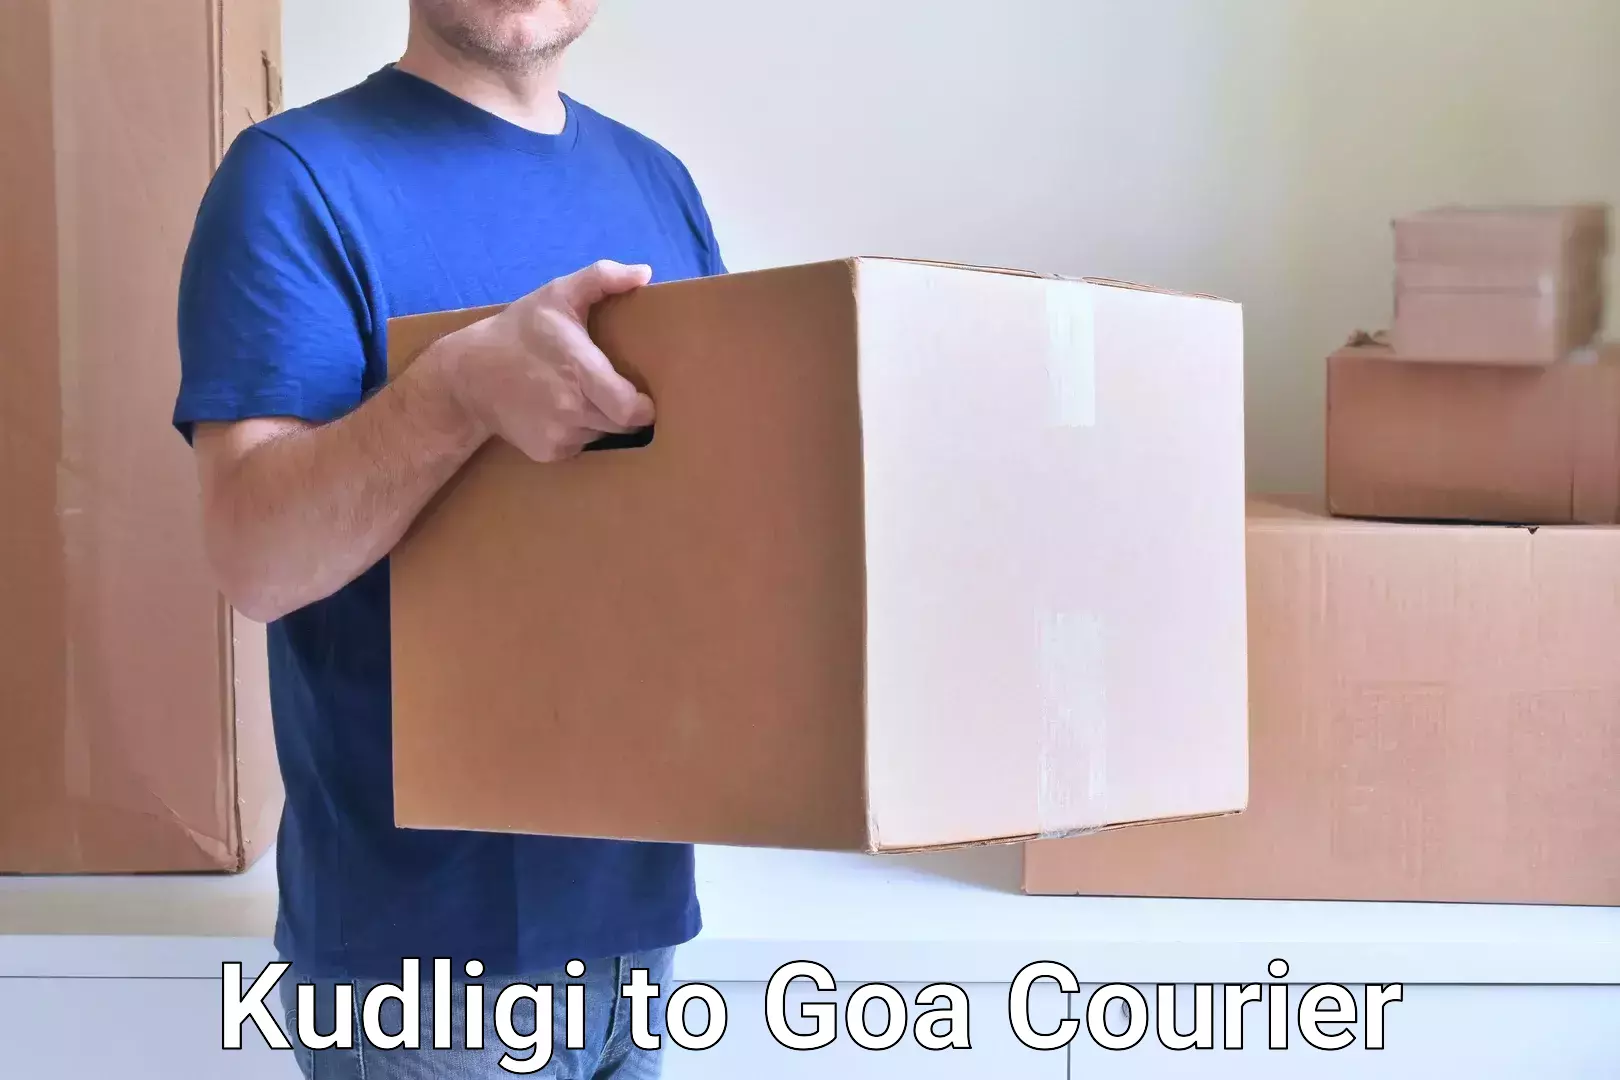 Efficient order fulfillment Kudligi to Goa